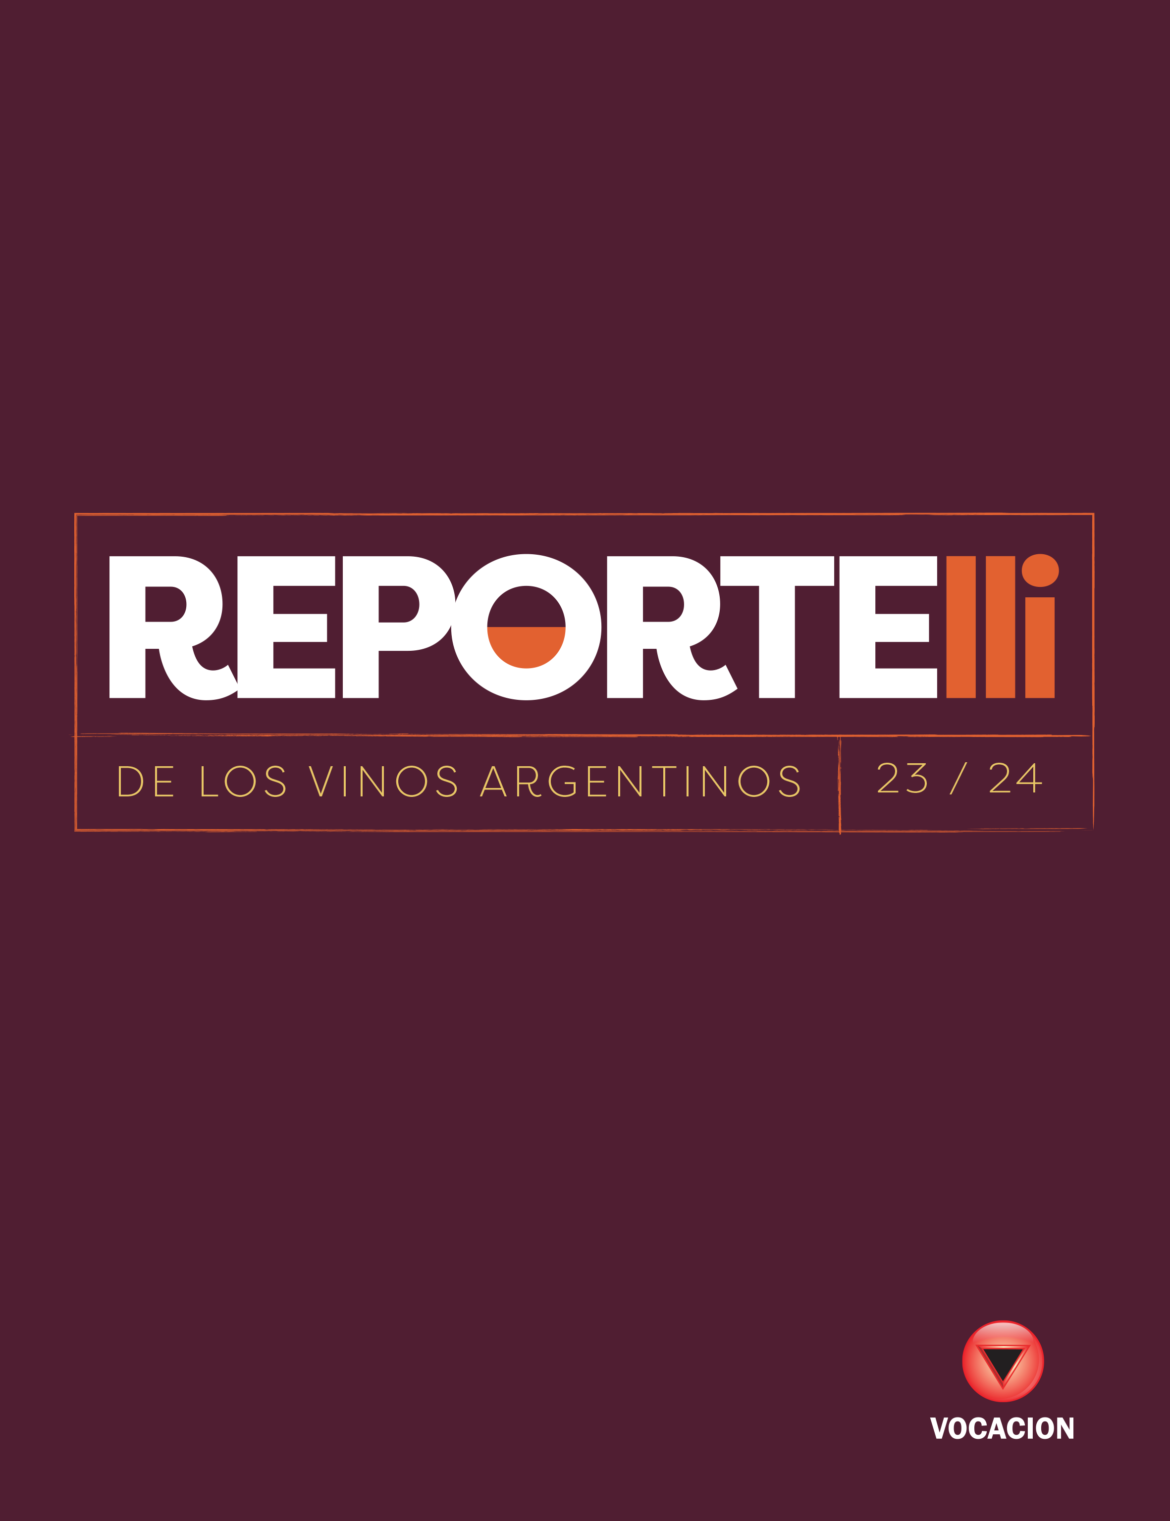 Argentina tiene una nueva guía de vinos: Fabricio Portelli lanza REPORTELLI de los vinos Argentinos